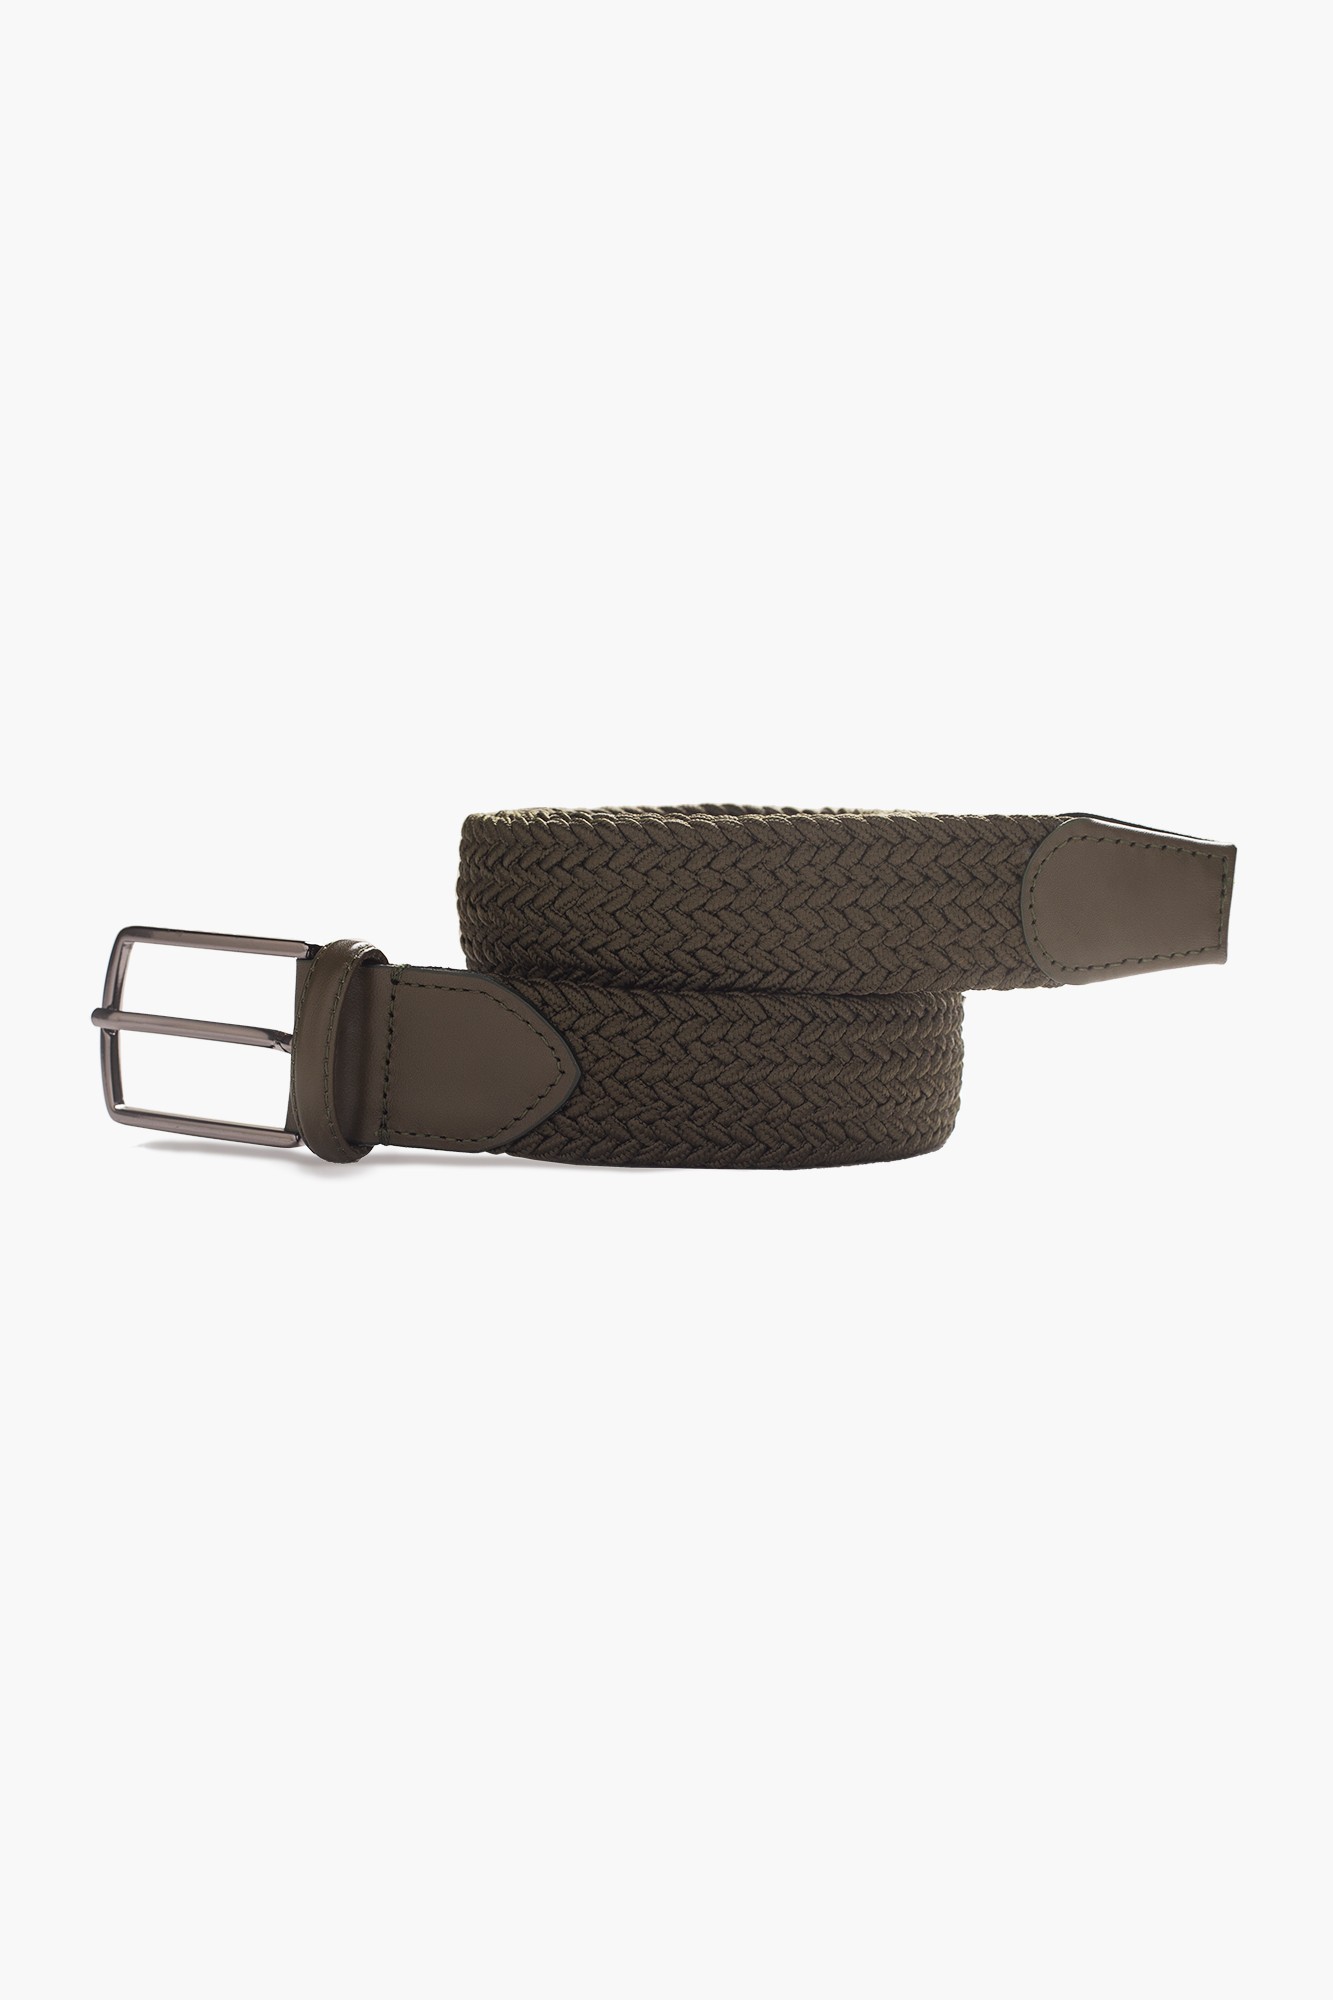 Elastic Knit Belt with Genuine Leather - Khaki